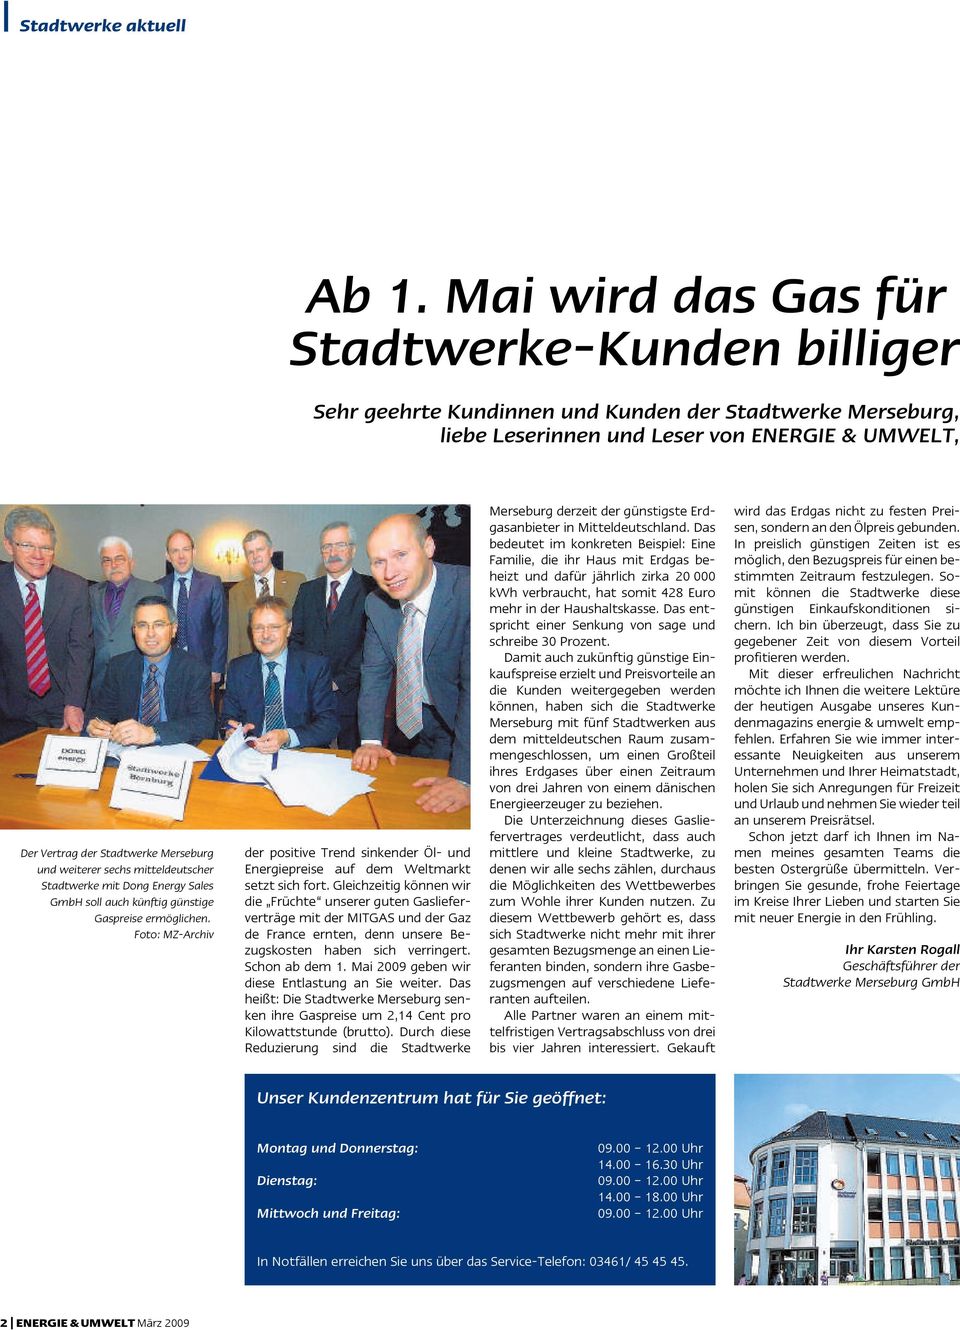 weiterer sechs mitteldeutscher Stadtwerke mit Dong Energy Sales GmbH soll auch künftig günstige Gaspreise ermöglichen.